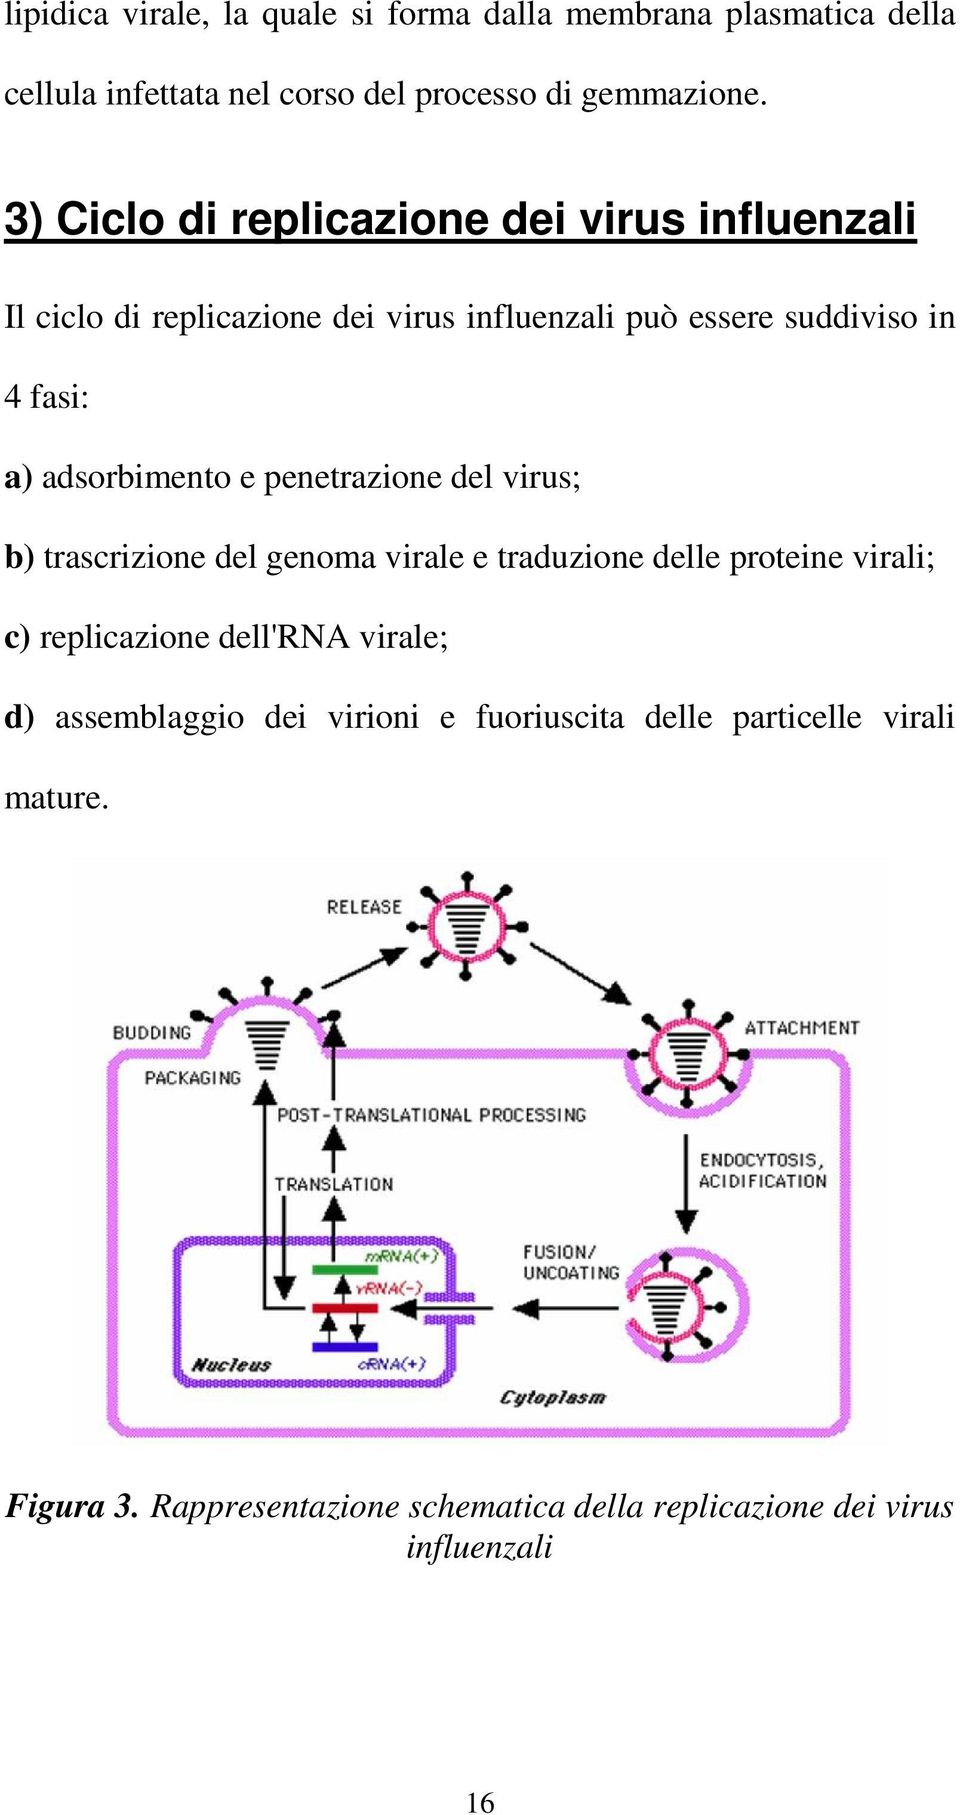 adsorbimento e penetrazione del virus; b) trascrizione del genoma virale e traduzione delle proteine virali; c) replicazione dell'rna